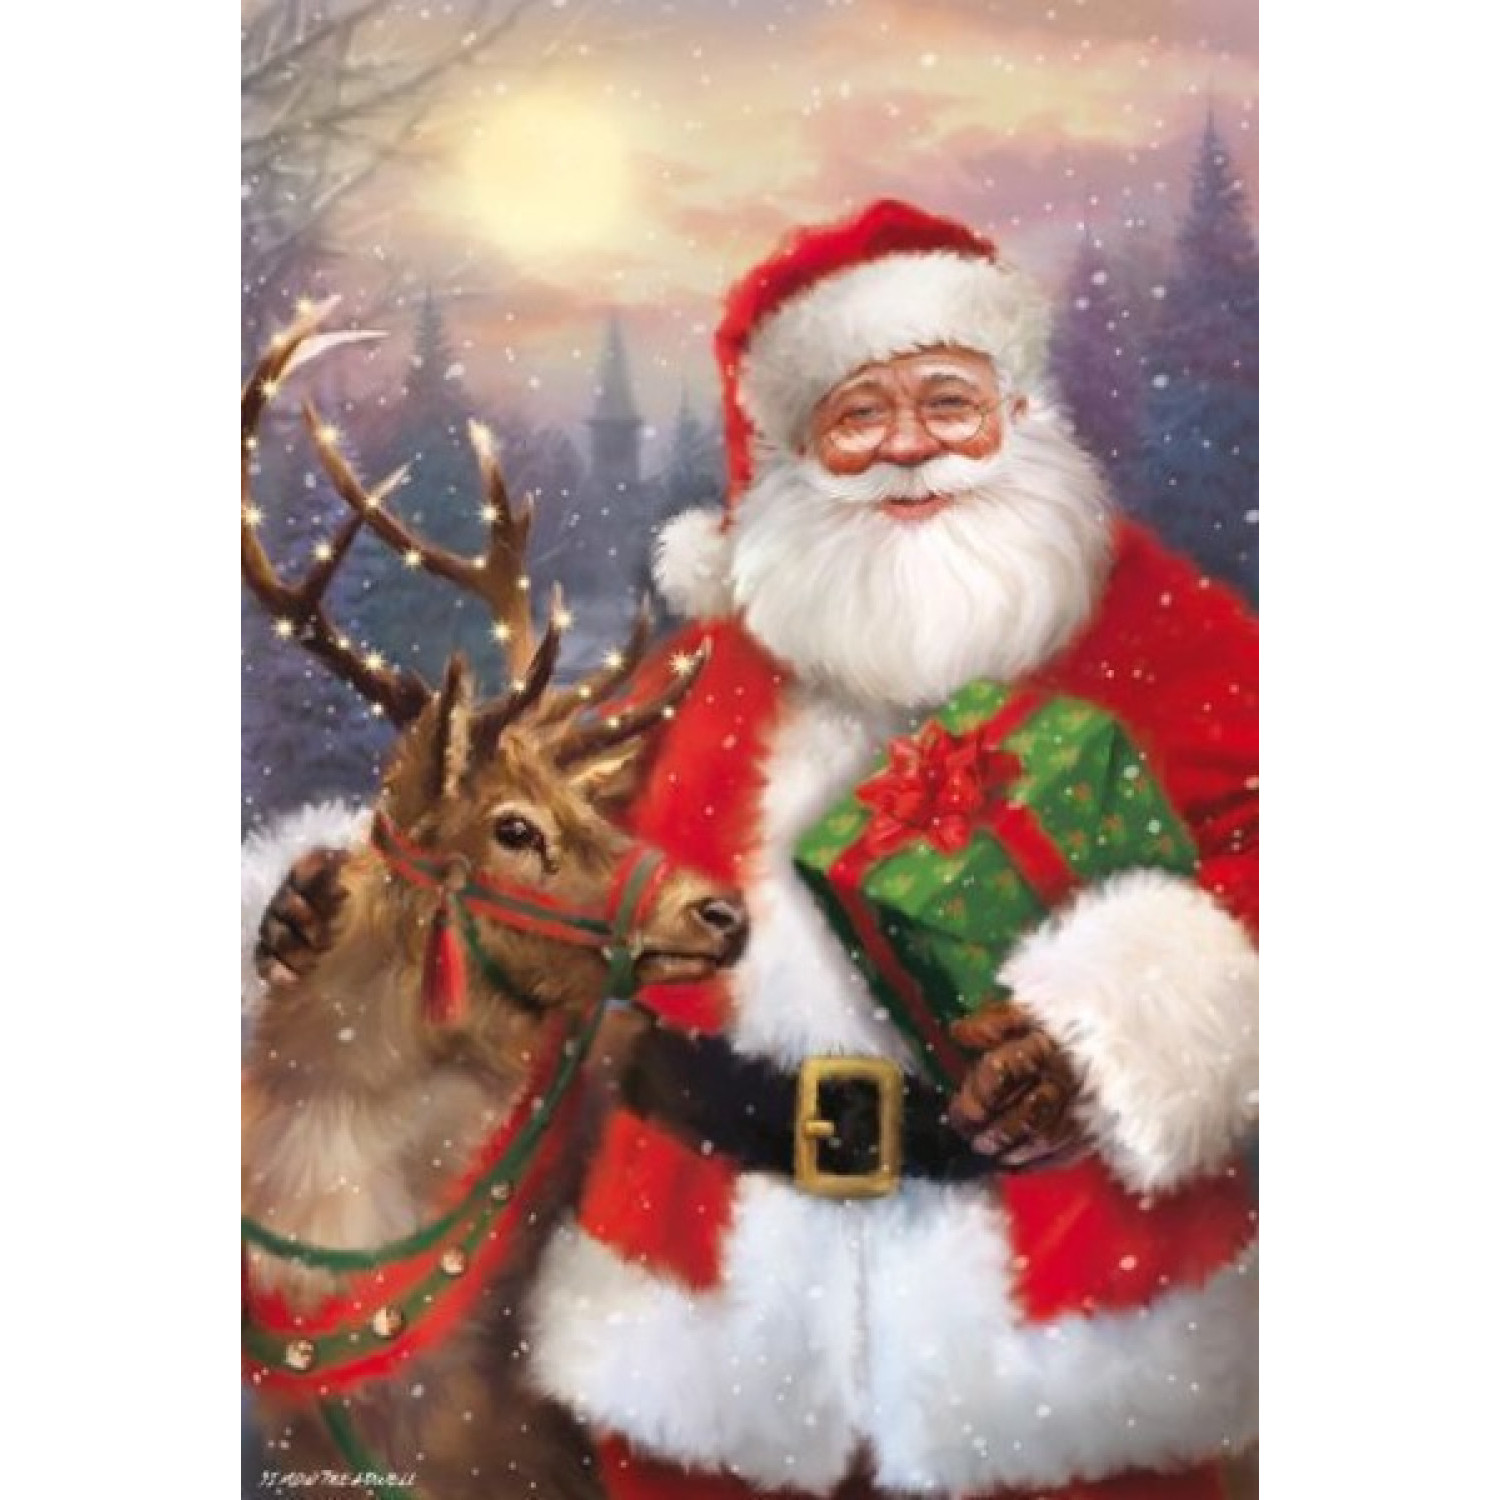 Диамантен гоблен Дядо Коледа с елен, 40x50 см.